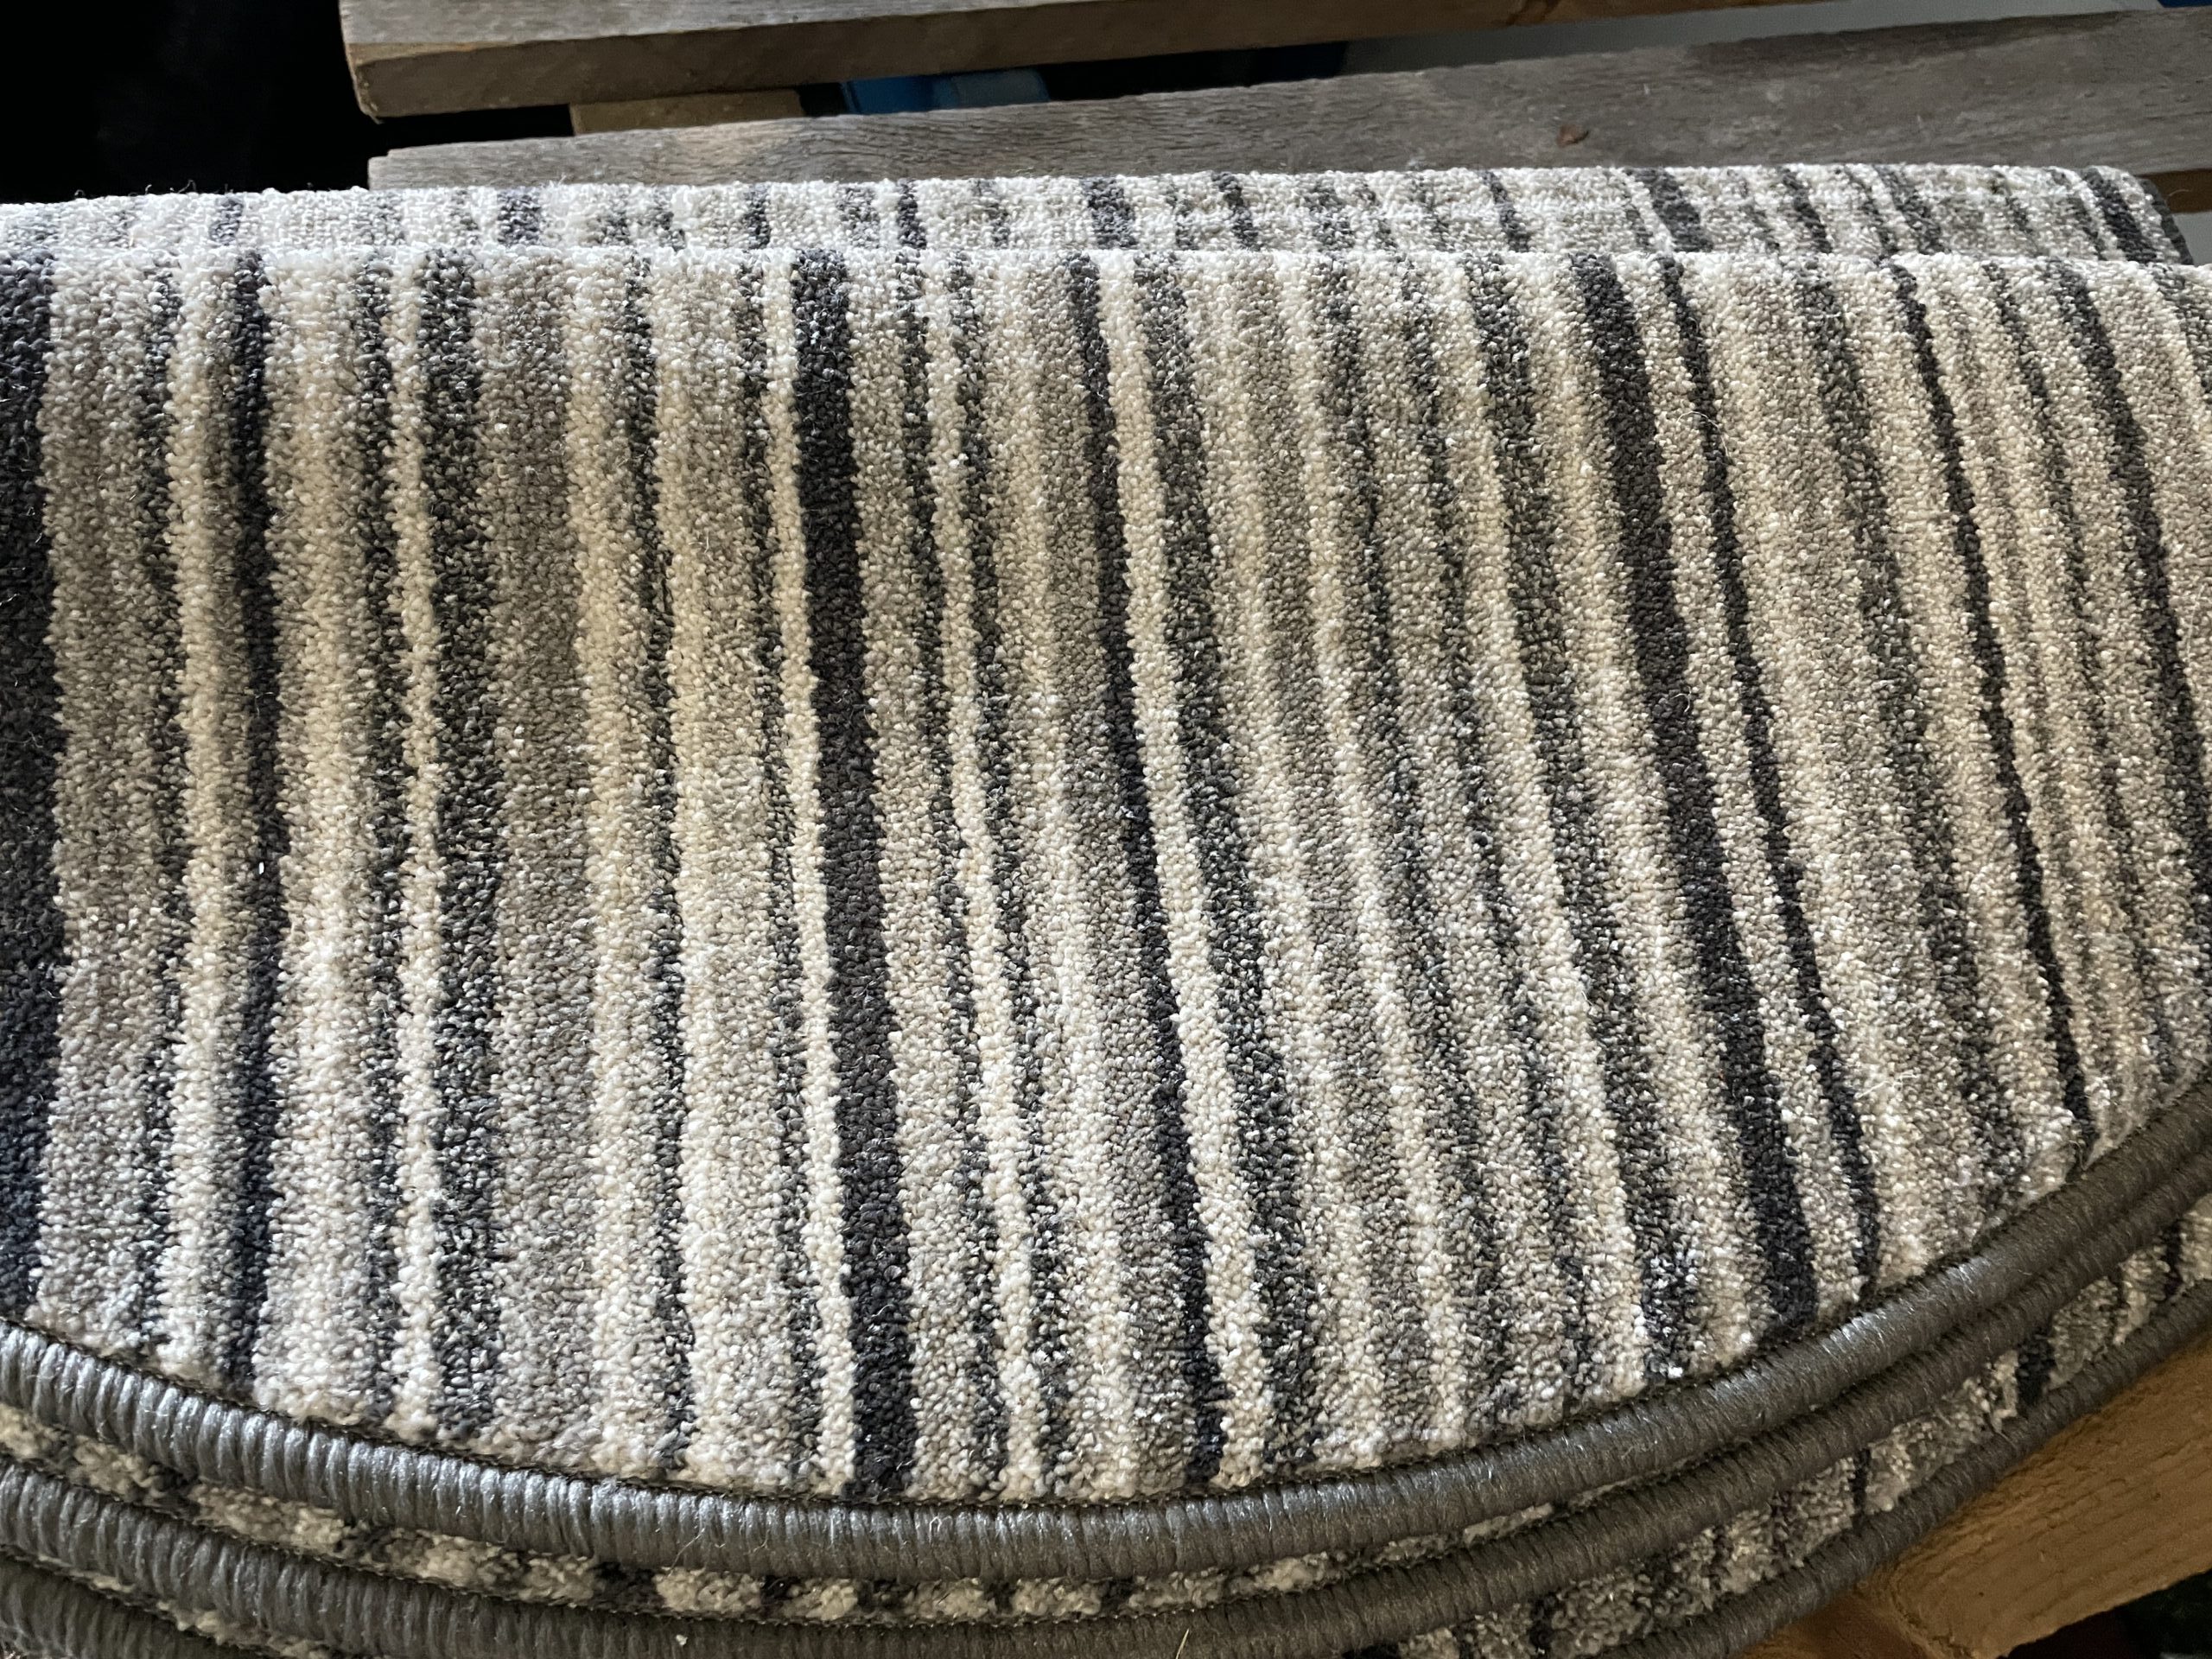 XL (halve maantjes ) Grey/Taupe afmetingen 25 x 65 cm. van € 5,95 voor € 3-, p/st – Langenbach | De goedkoopste leverancier van karpetten en vloerkleden. Kuntgras kunst gras voordelig